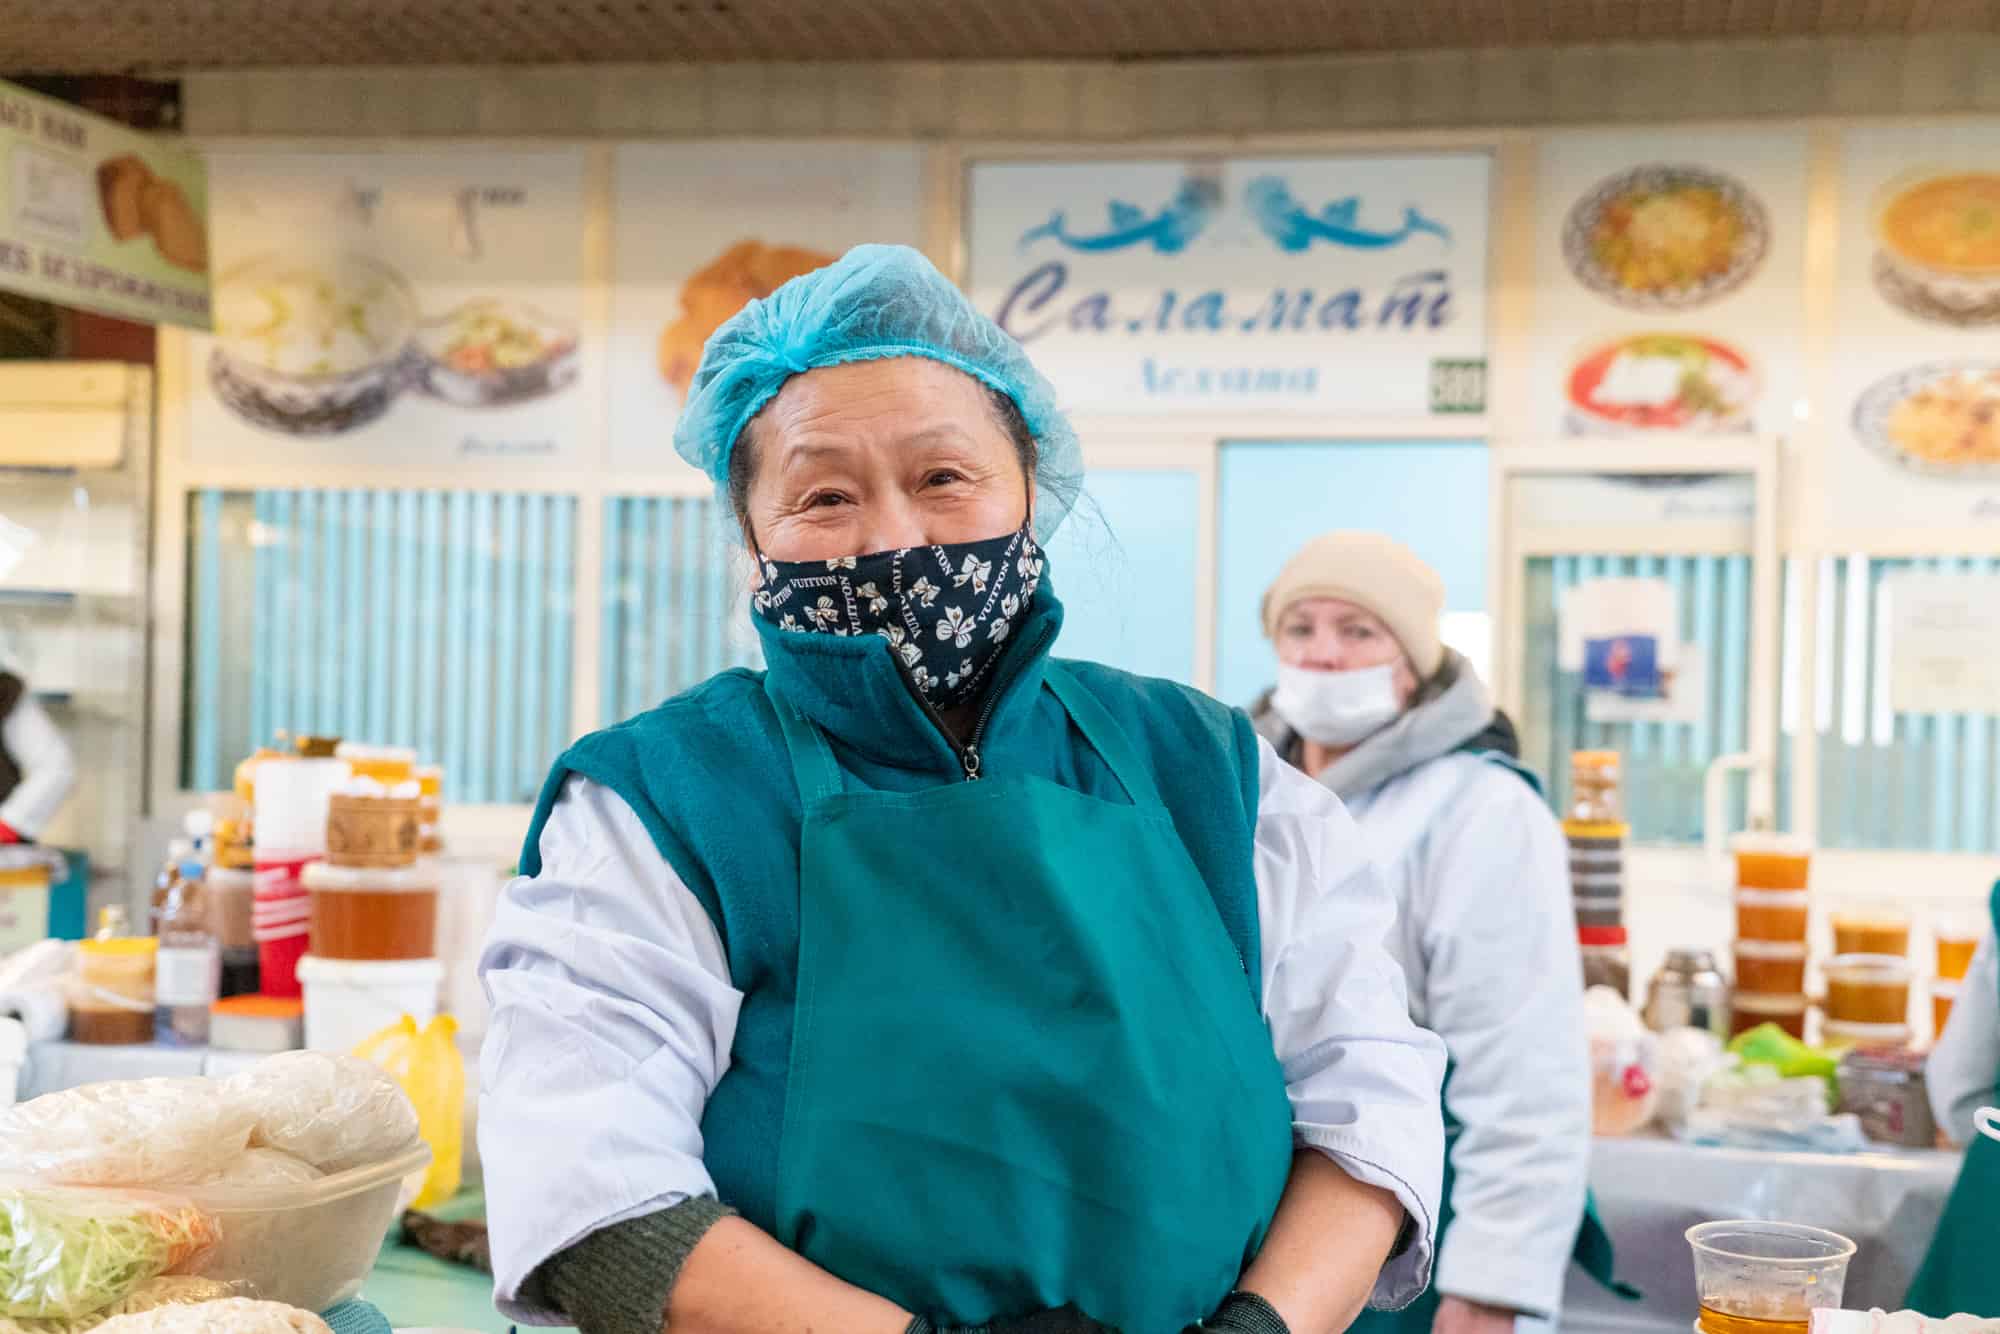 Kazakhstan - Vendor at indoor food market in Almaty